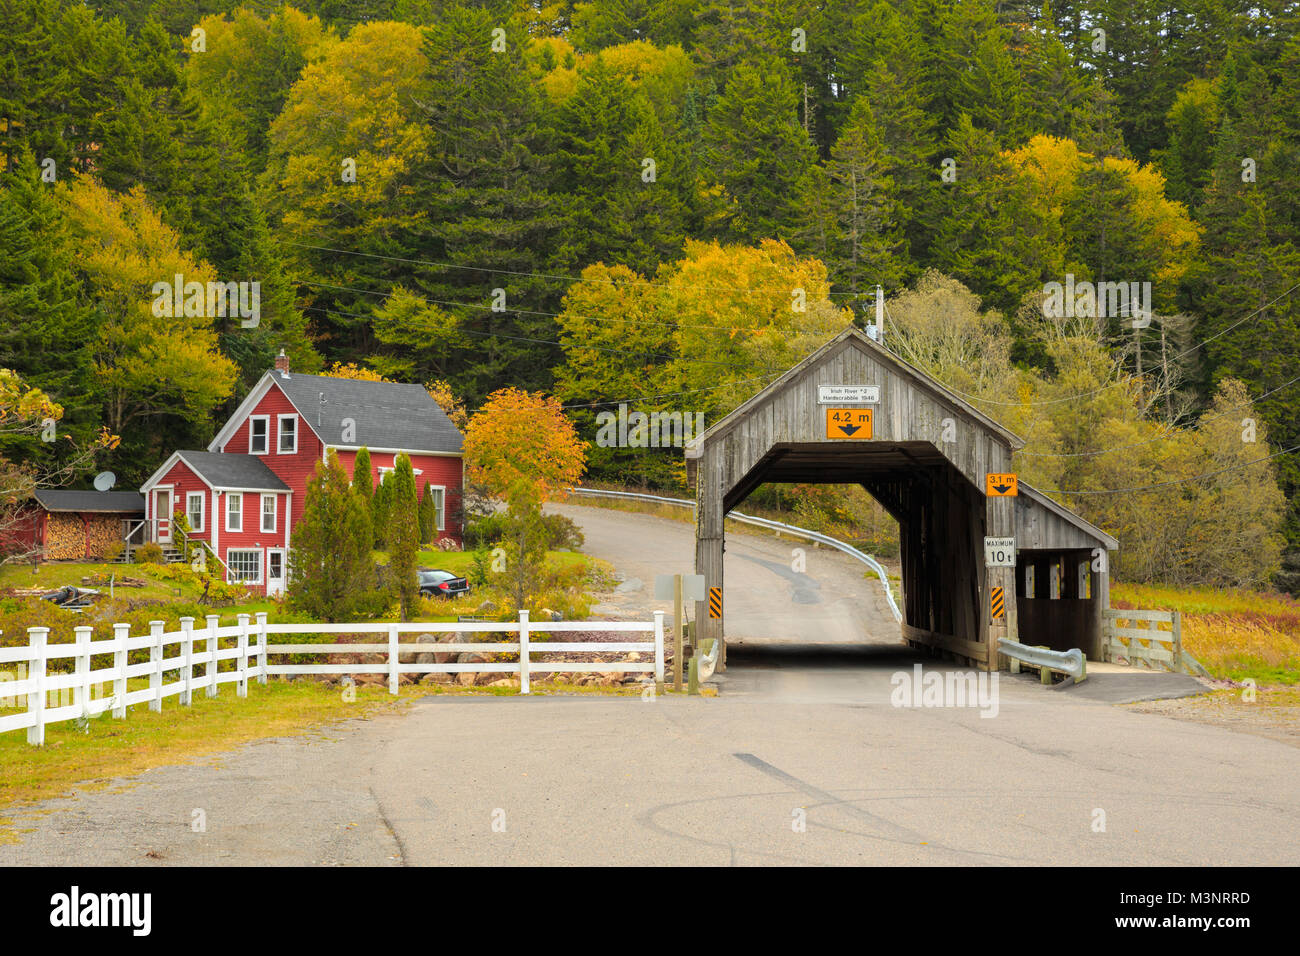 Les arbres d'automne jaune coloré pittoresque vieux pont couvert en bois surround par maison rouge rural St Martins Baie de Fundy, Nouveau-Brunswick Canada Banque D'Images